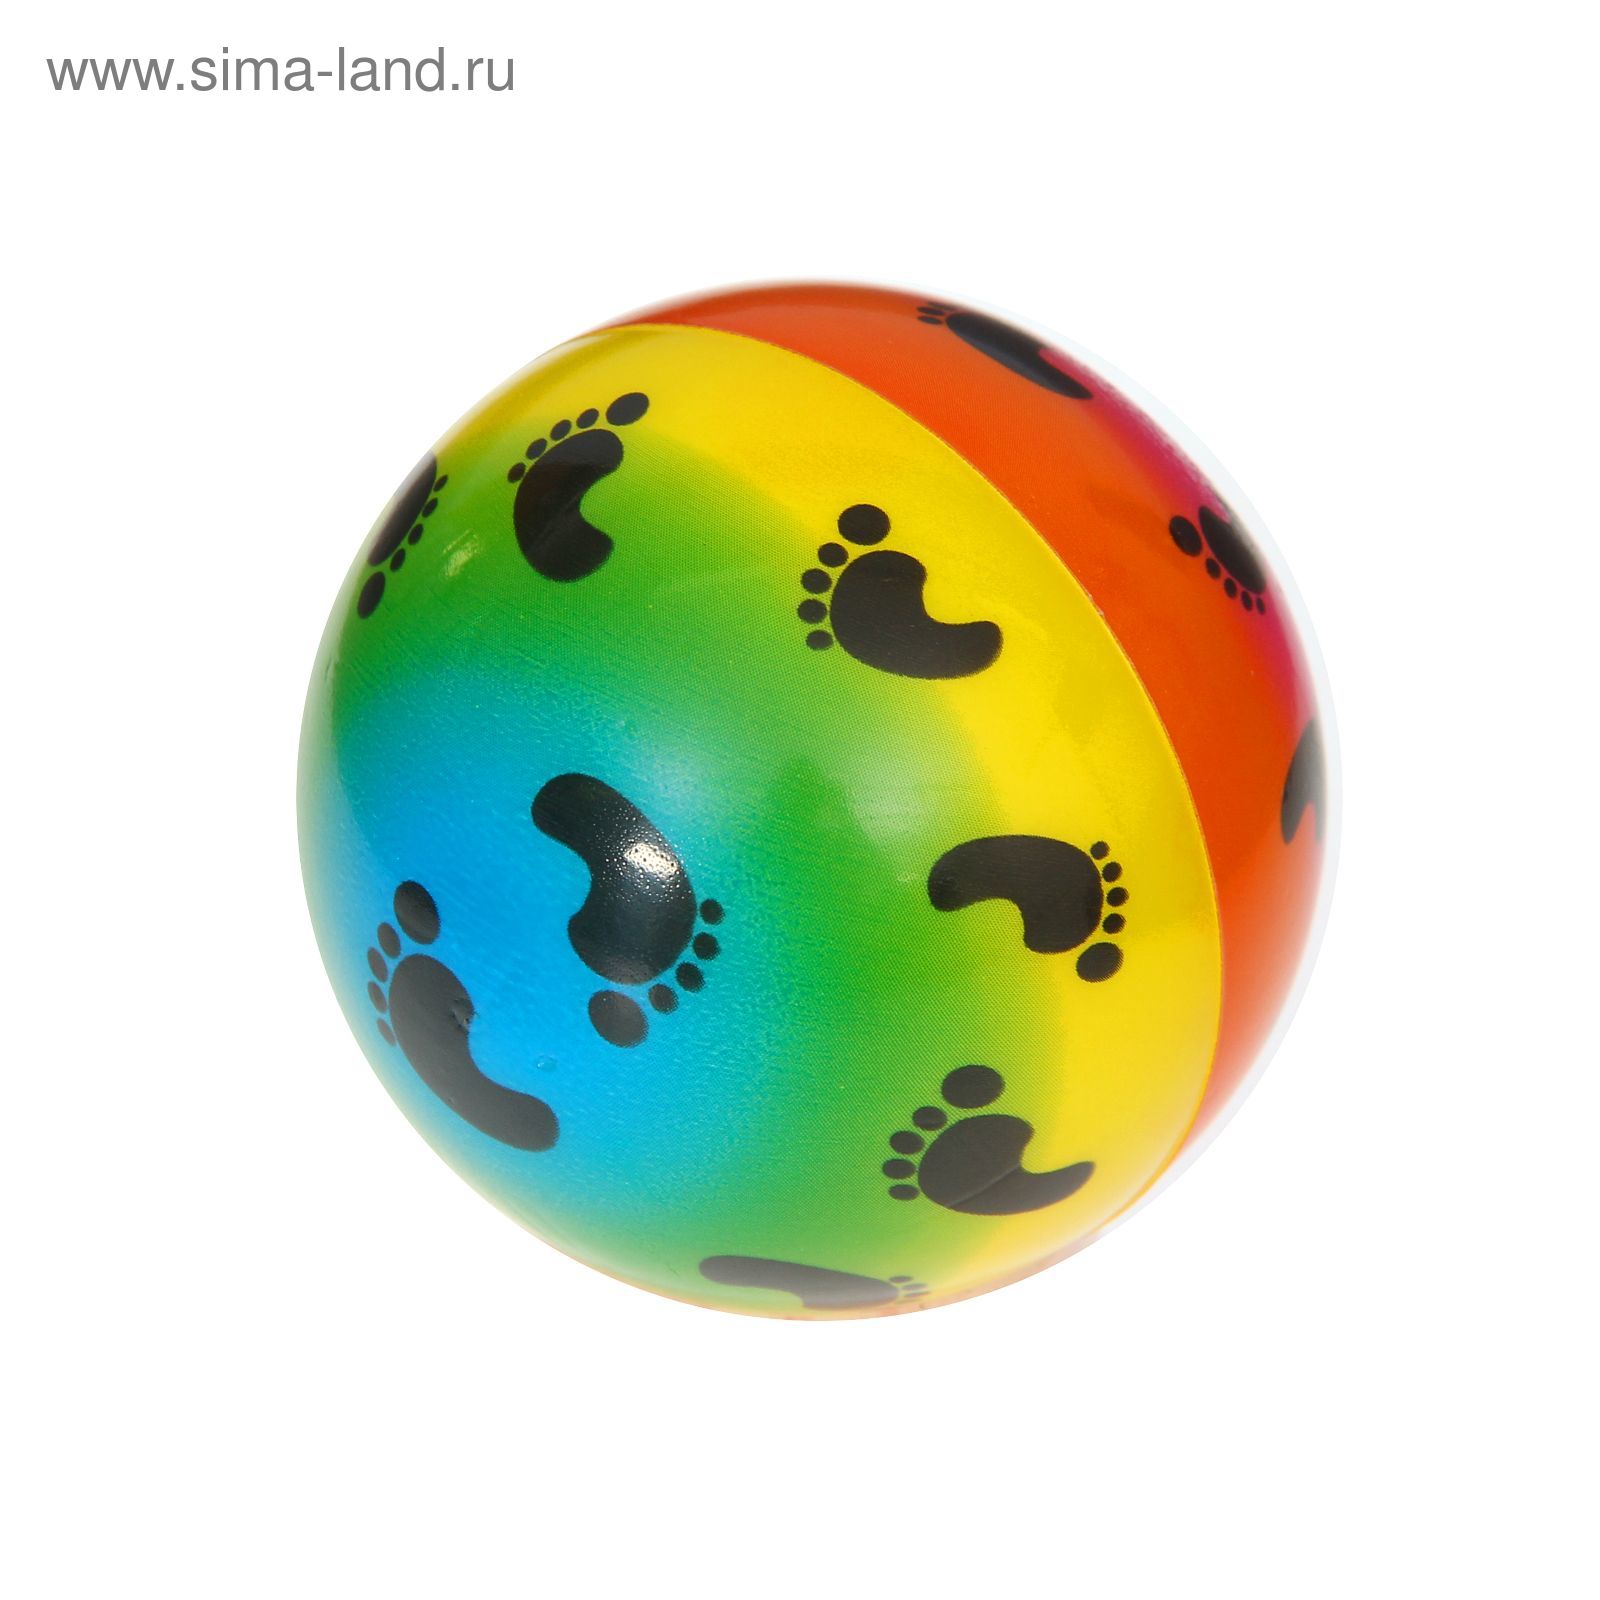 Мягкий мяч "Следы" 7,5 см